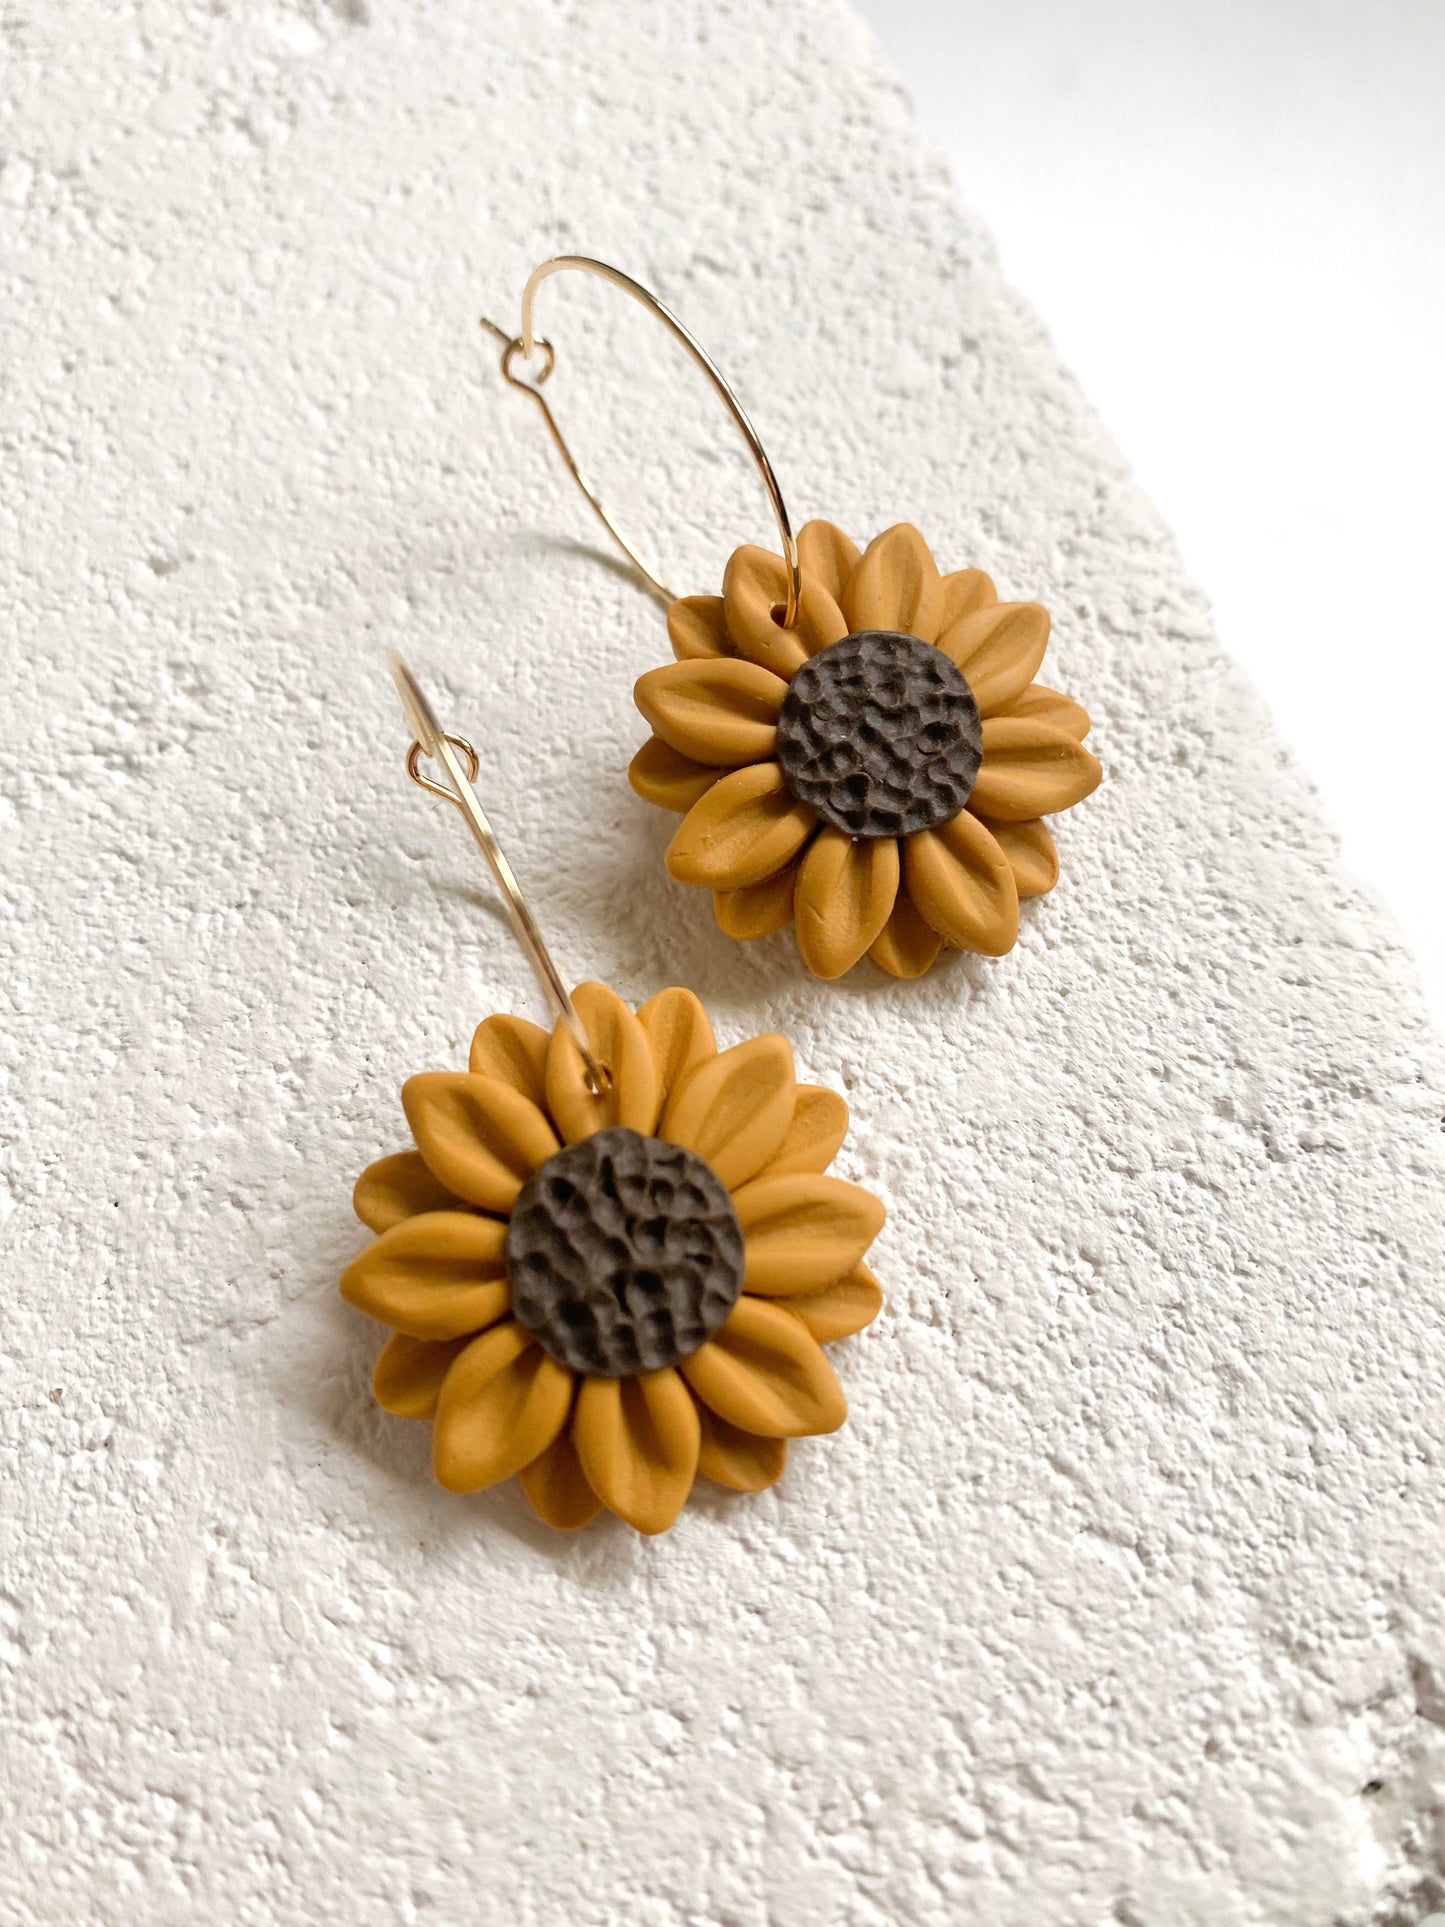 Sunflower hoop earrings handmade by Jenny Drake Designs